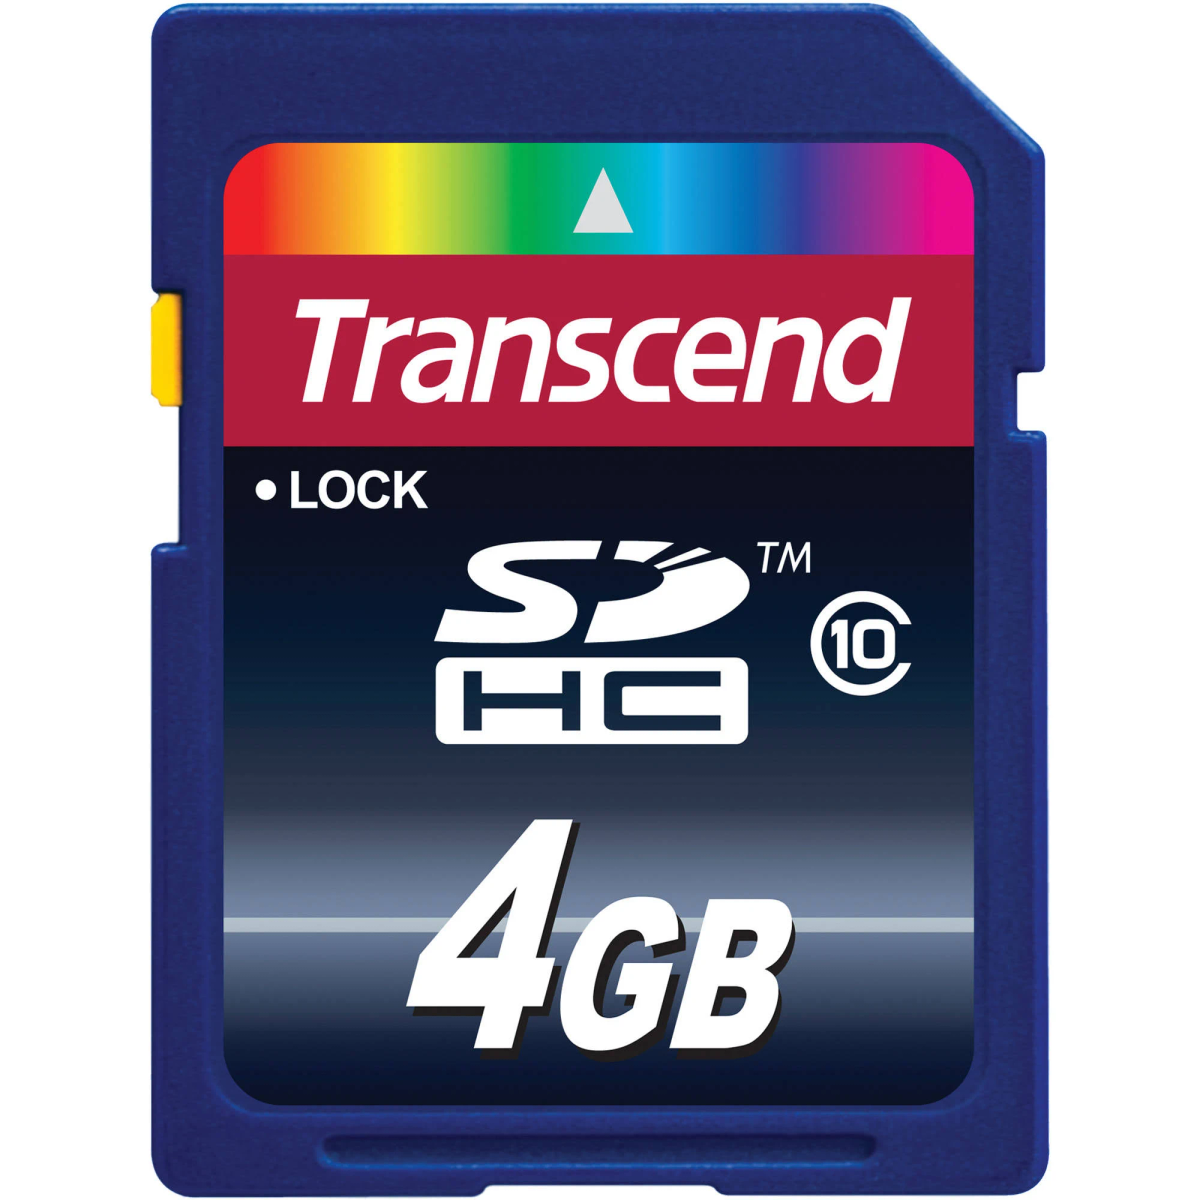 4 Micro-SDHC, SD m0000BIQN0, GB Speicherkarte, TRANSCEND SDHC,